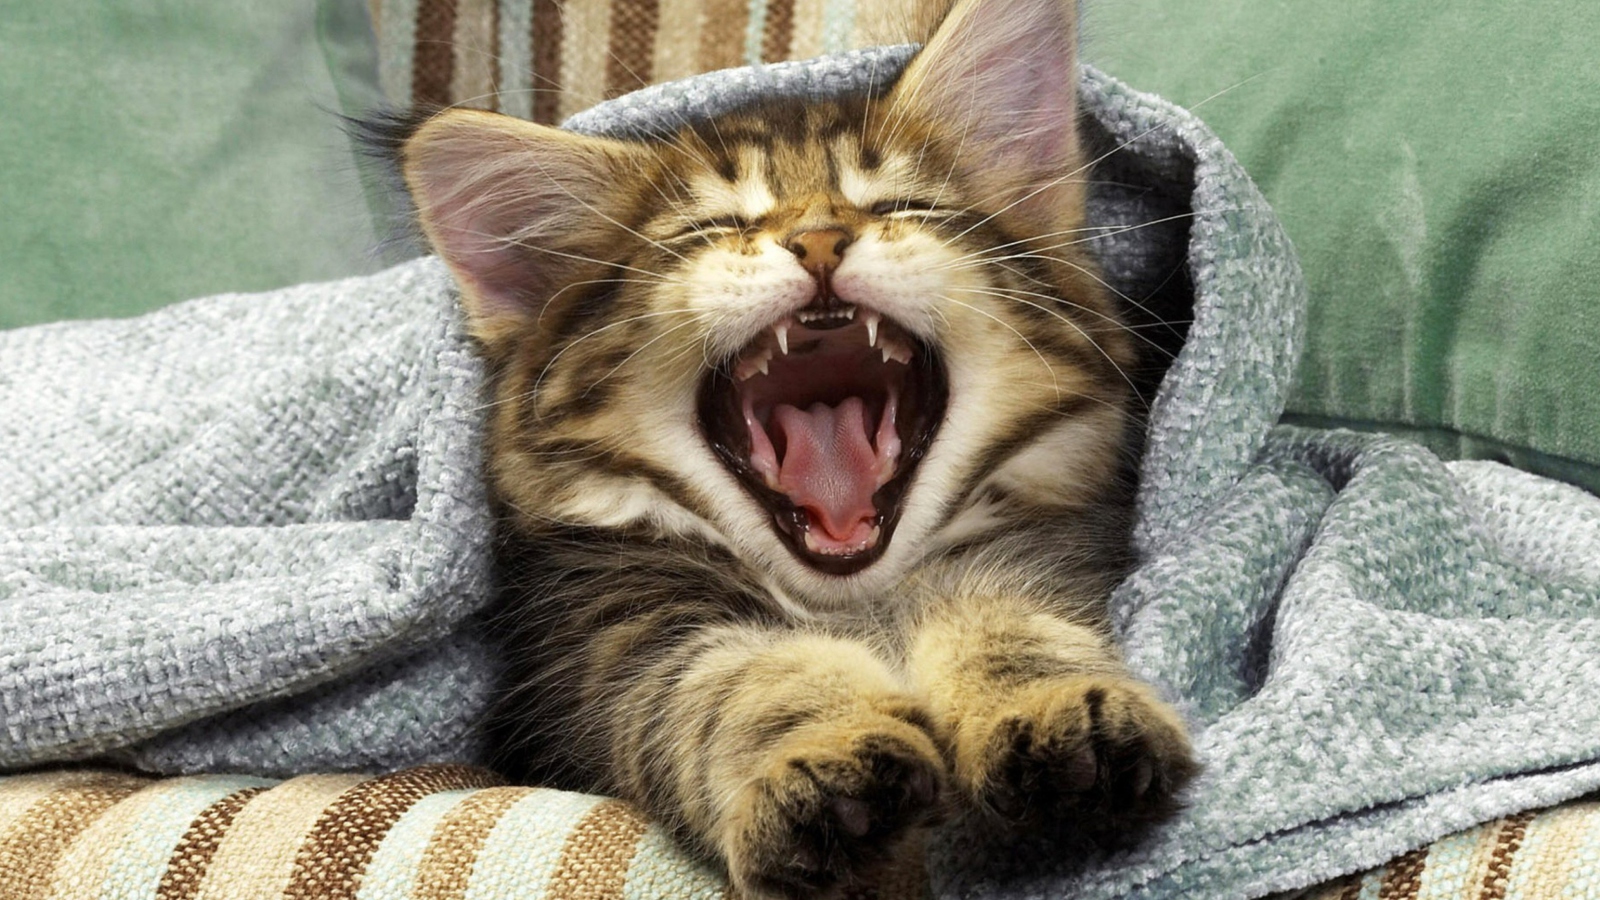 Kitten Yawning wallpaper 1600x900